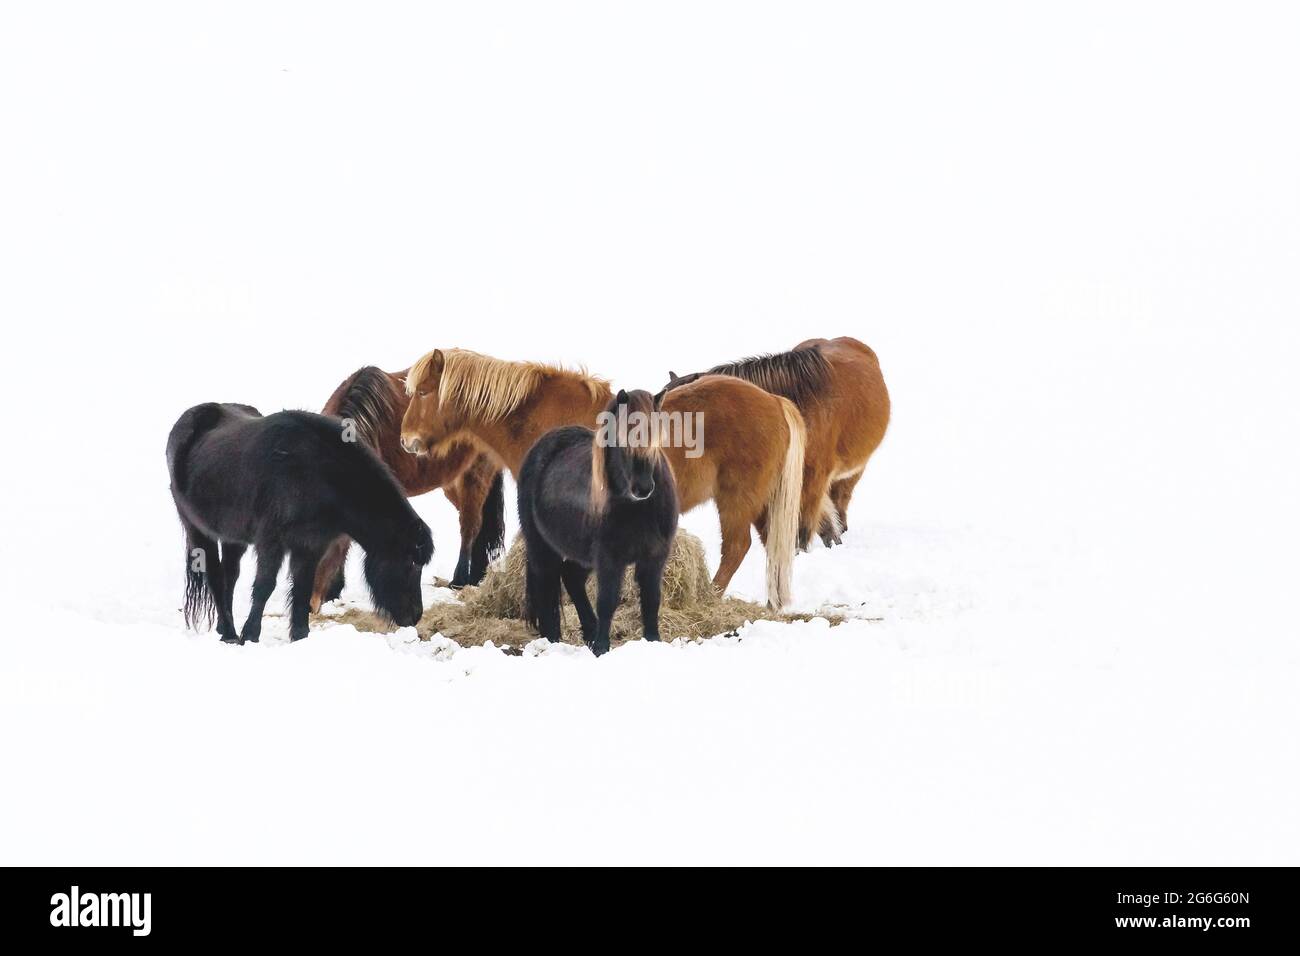 Cavallo islandico, cavallo islandese, pony islandese (Equus przewalskii F. caballus), mandria da un lato di alimentazione nella neve, Islanda Foto Stock